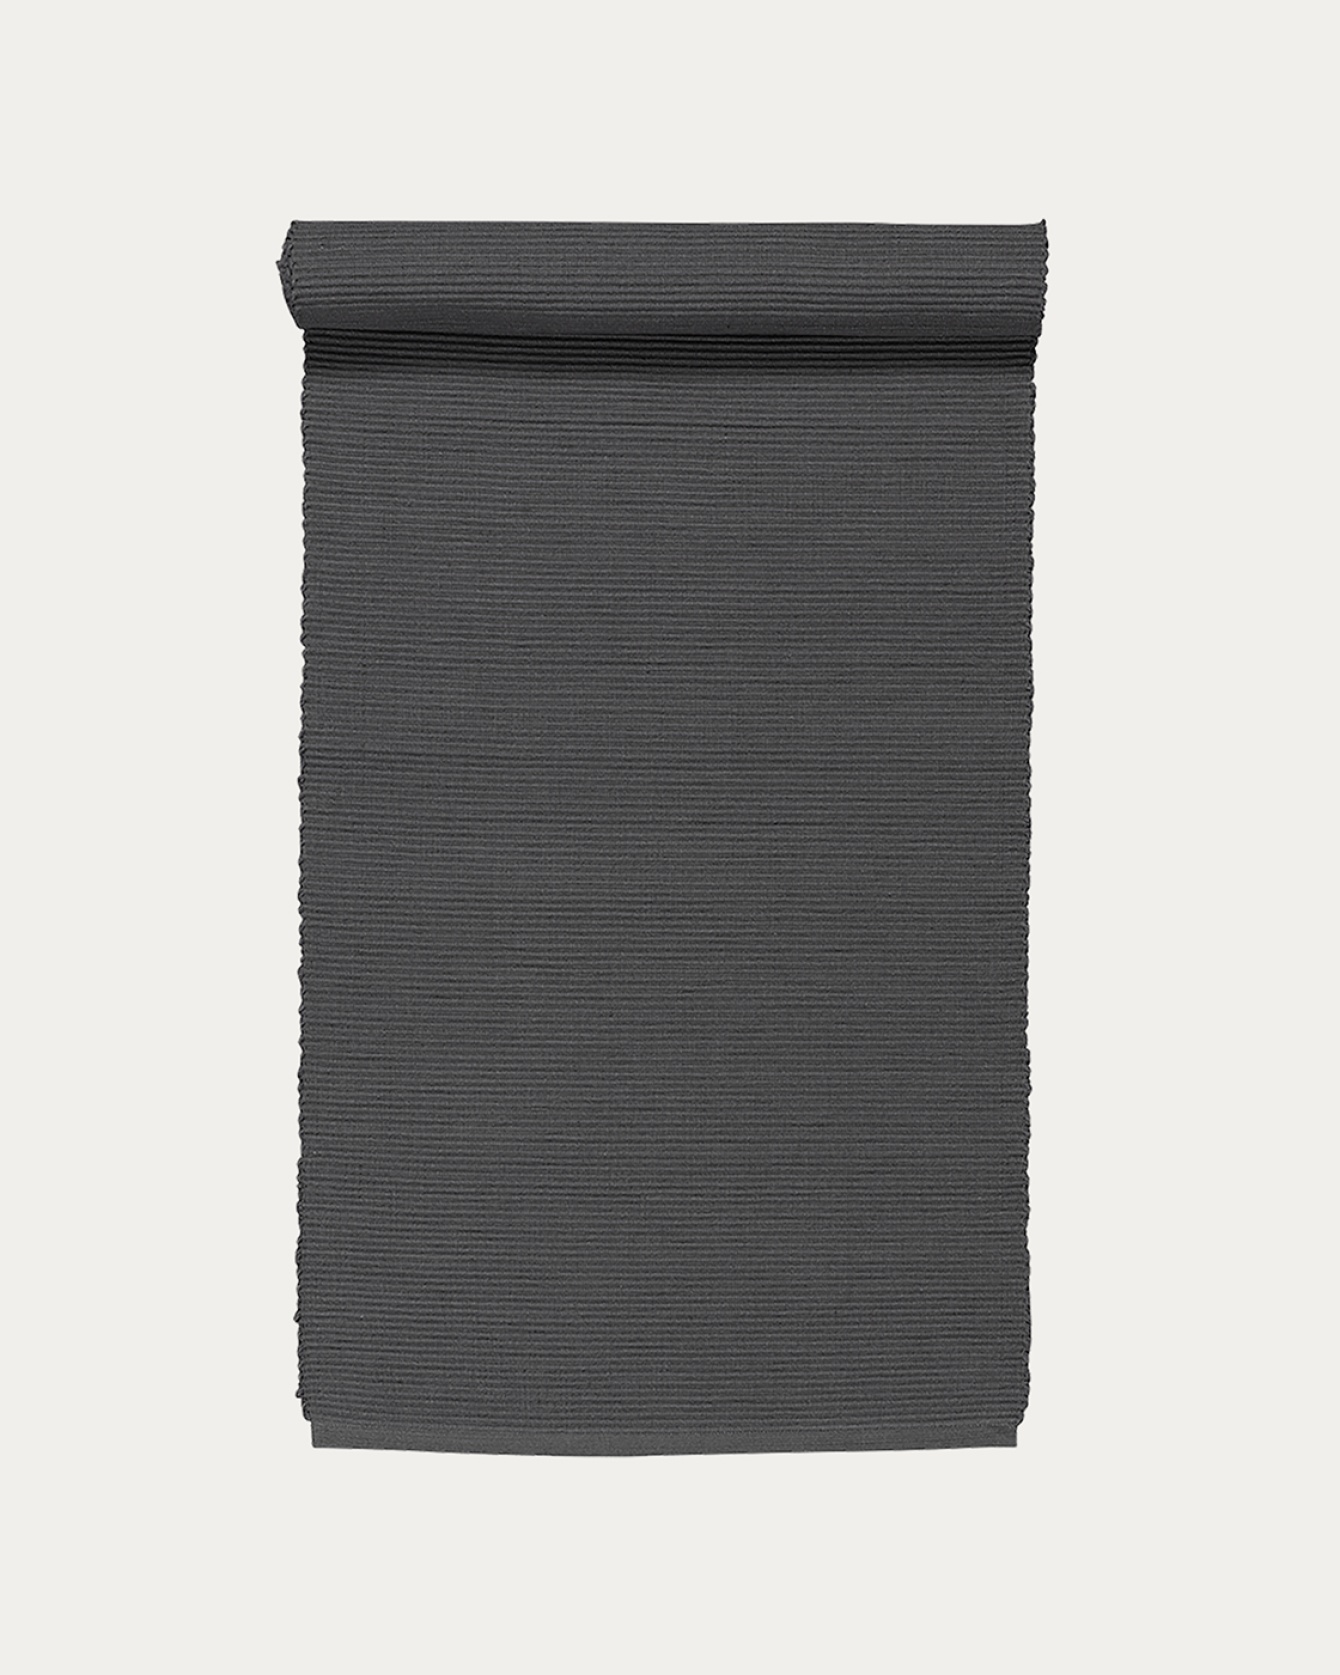 Image du produit chemin de table UNI gris foncé en coton doux de qualité côtelée de LINUM DESIGN. Taille 45 x 150 cm.